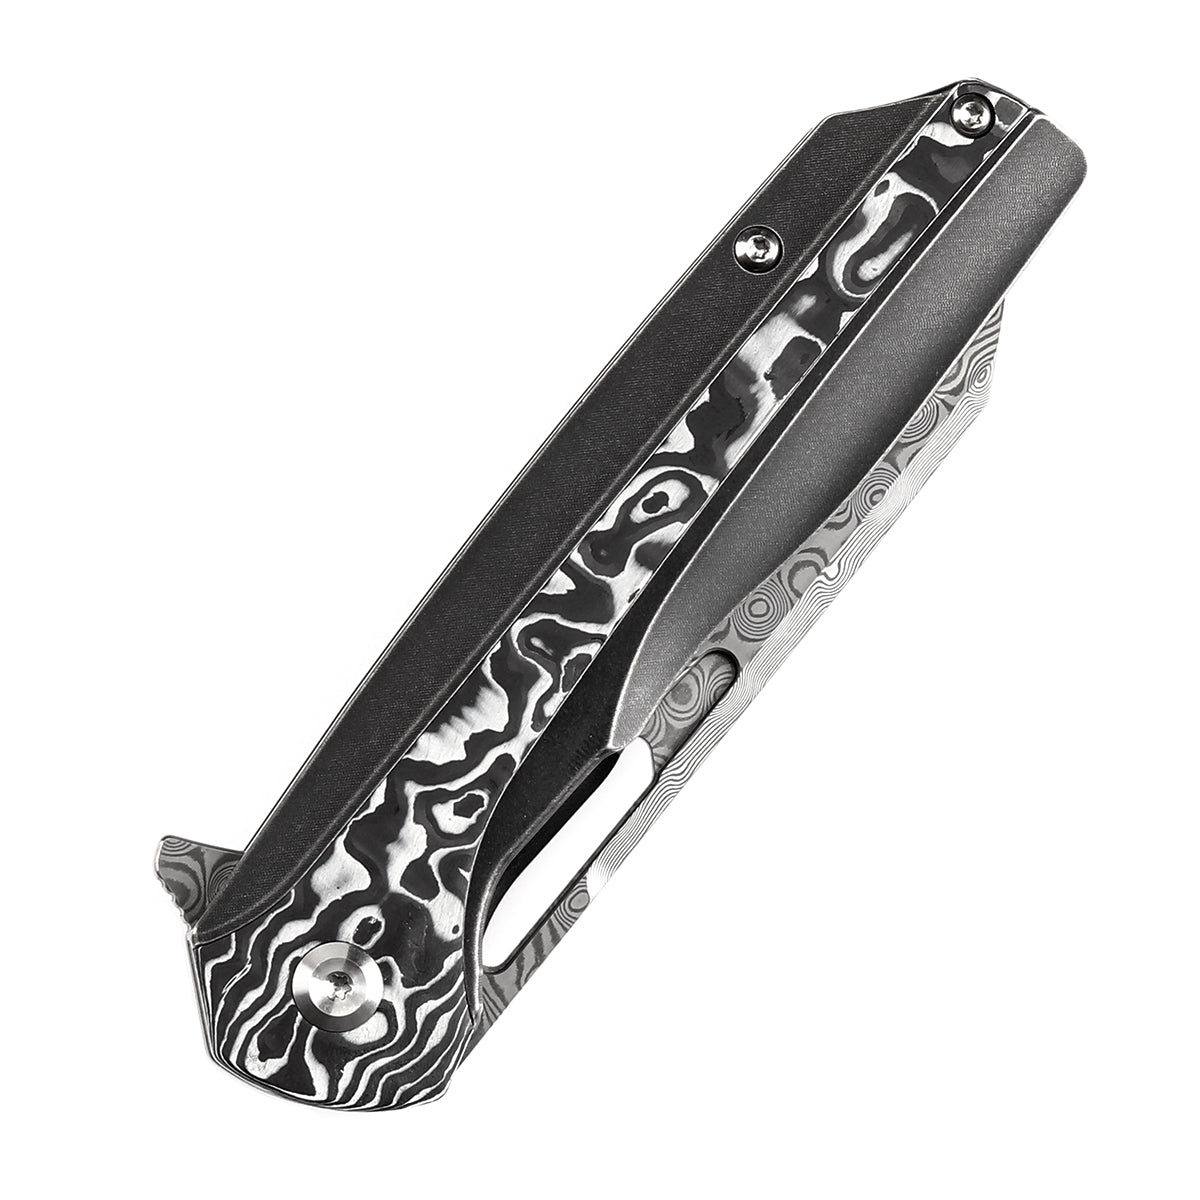 Kansept Shard K1006C3 Damascus Blade White Carbon Fiber Handle Folding Knife